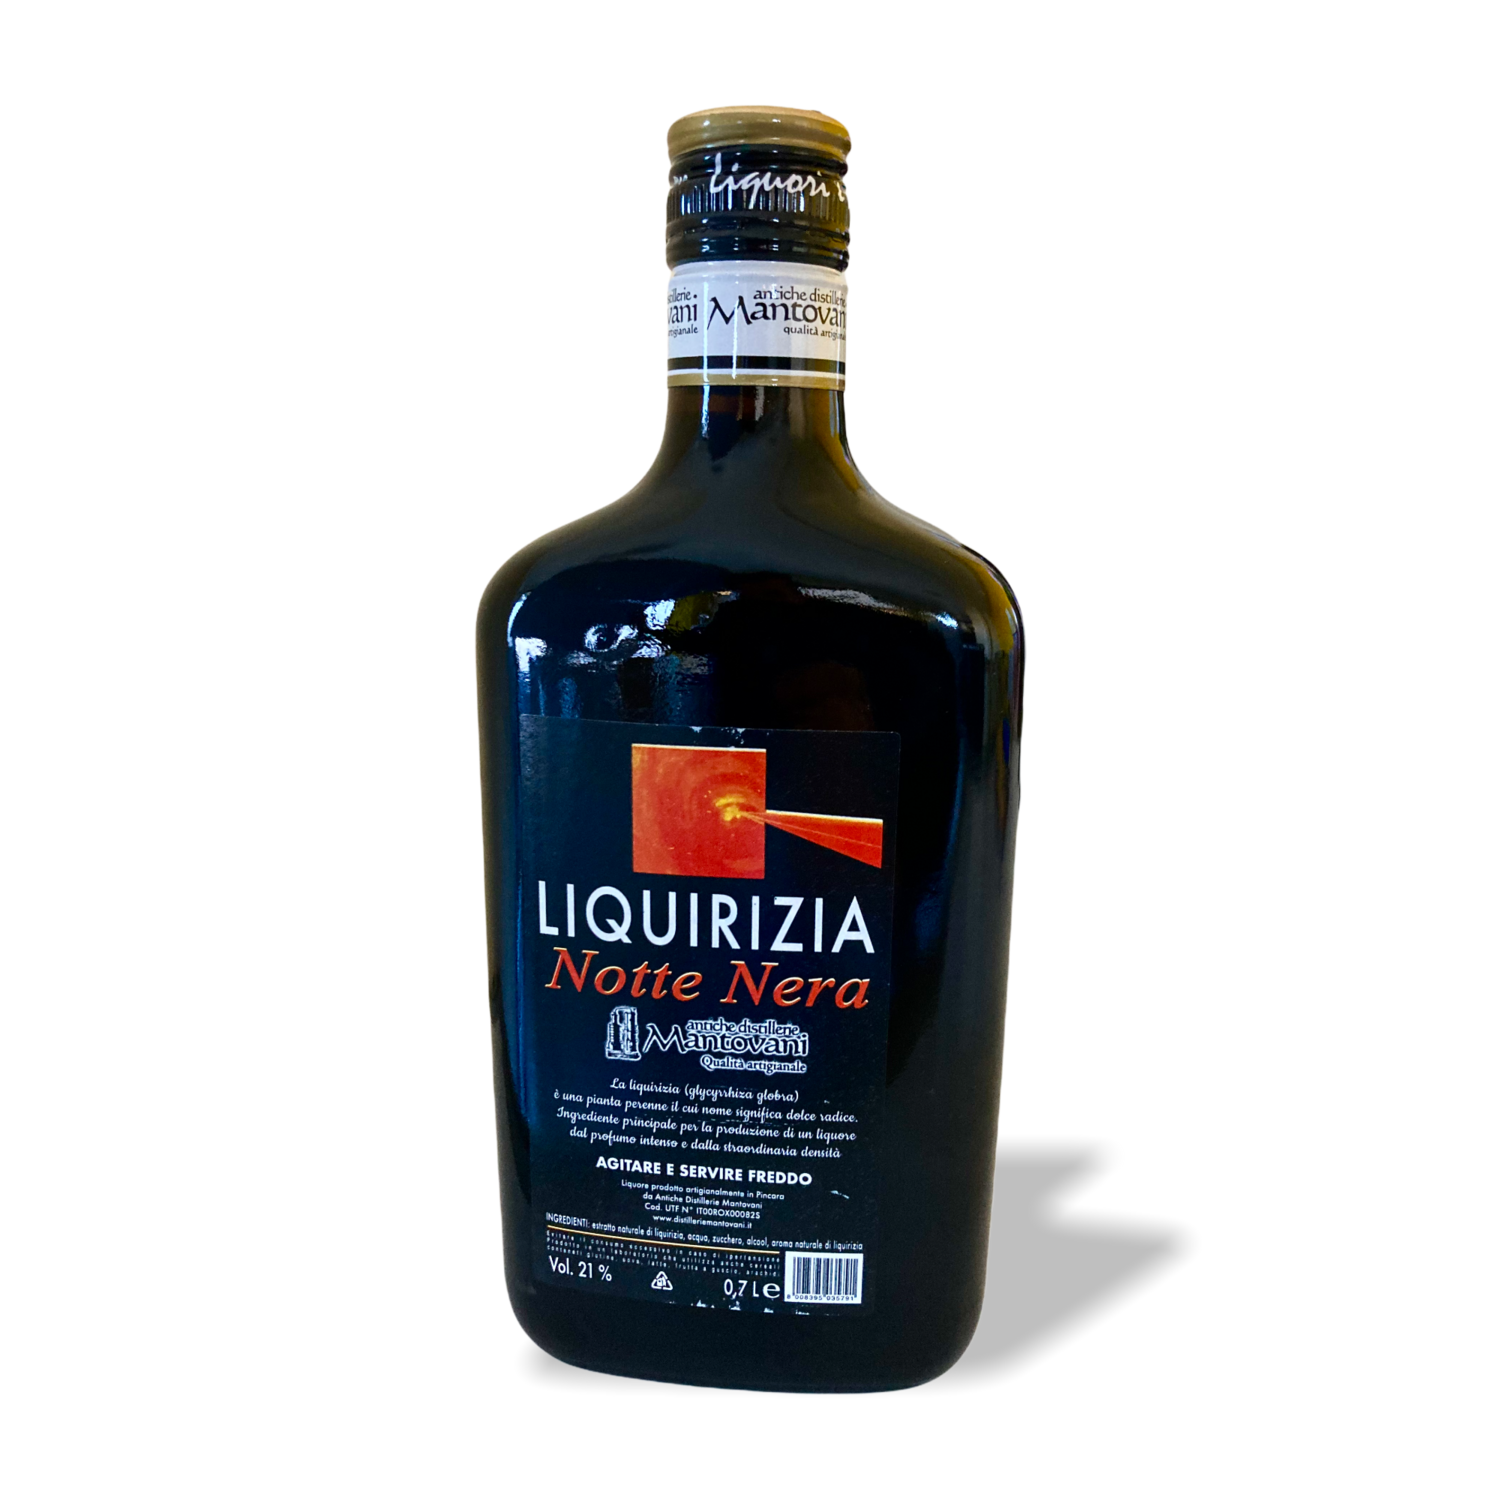 Liquirizia Notte Nera Antiche Distillerie Mantovani Qualità Artigianale 0,7 L. Vol. 21%